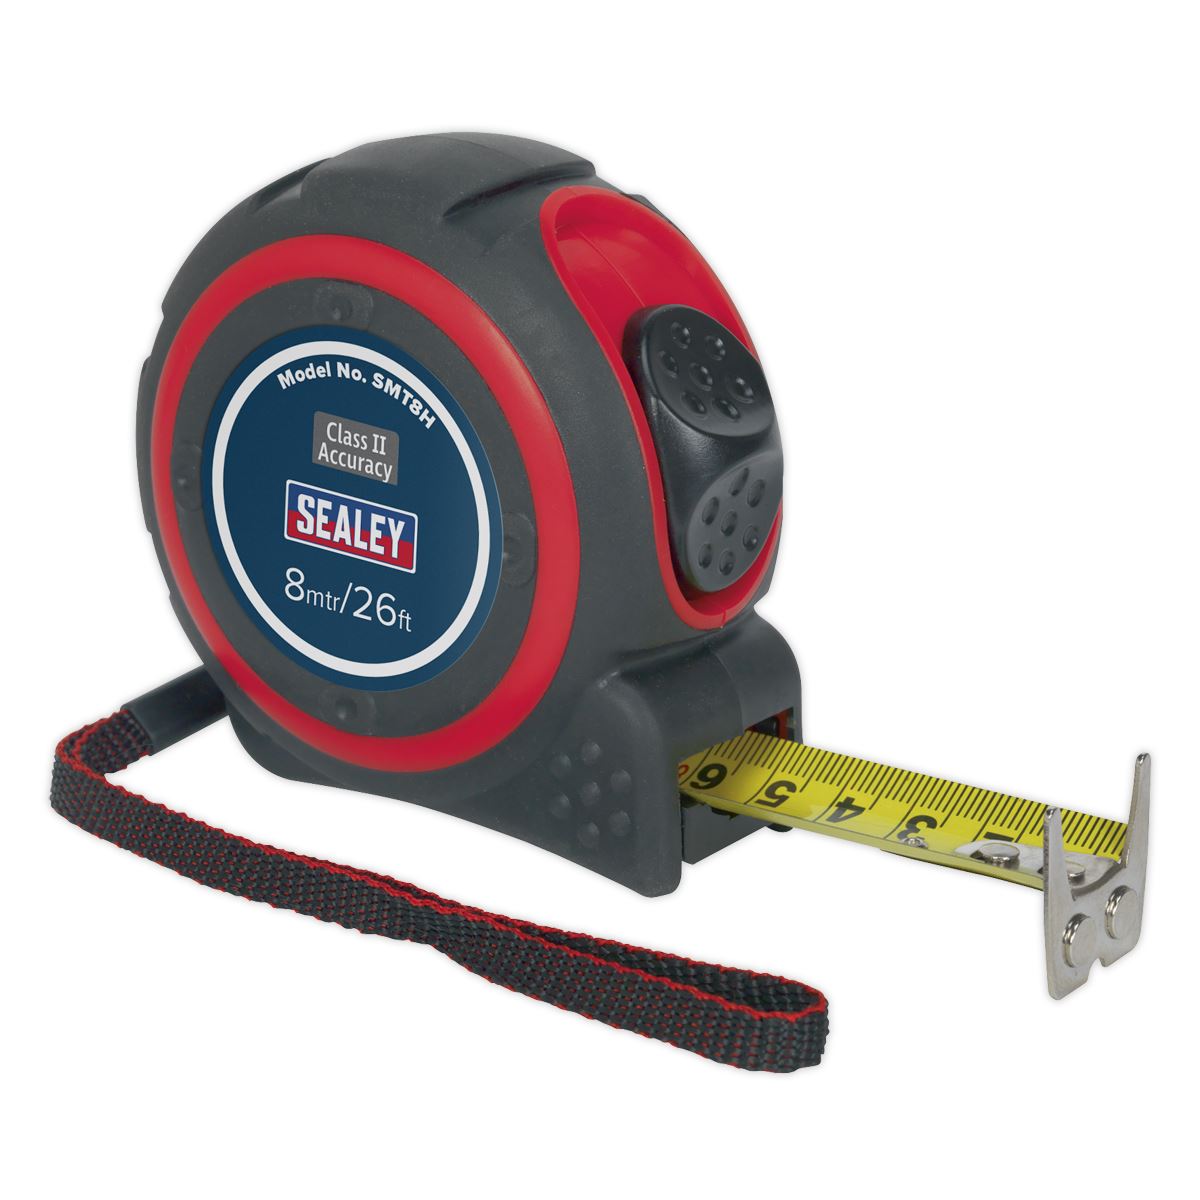 Sealey 5m or 8m Heavy Duty Tape Measure Rubber Body